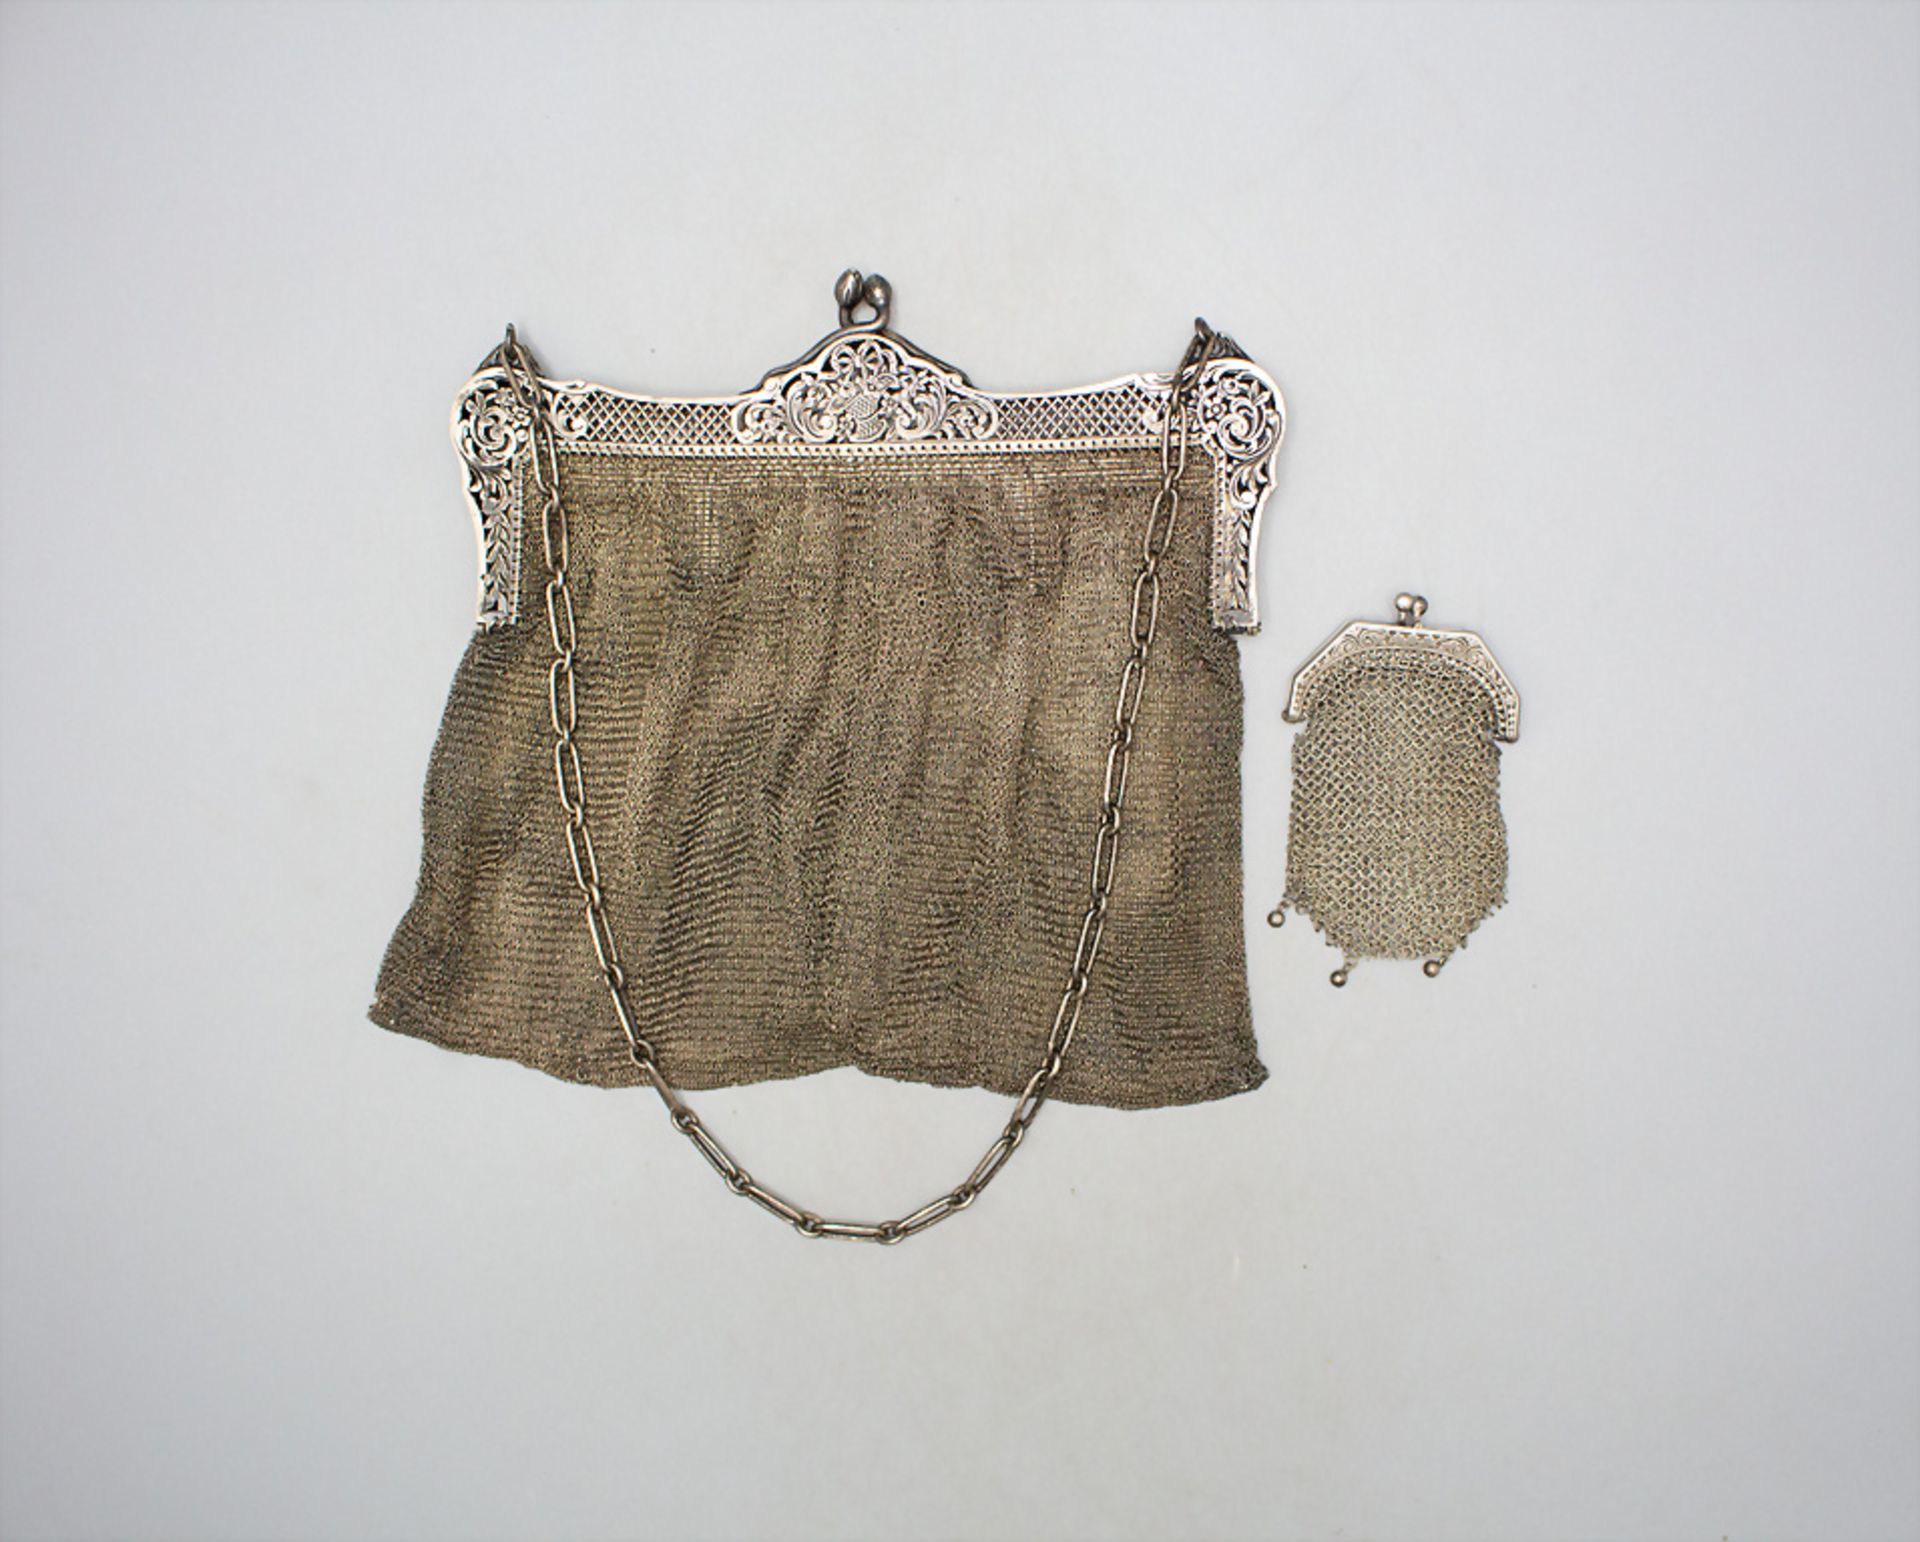 Silber Abendtasche mit Geldbörse / Kettentasche/ A silver evening bag with silver wallet, ... - Image 2 of 4